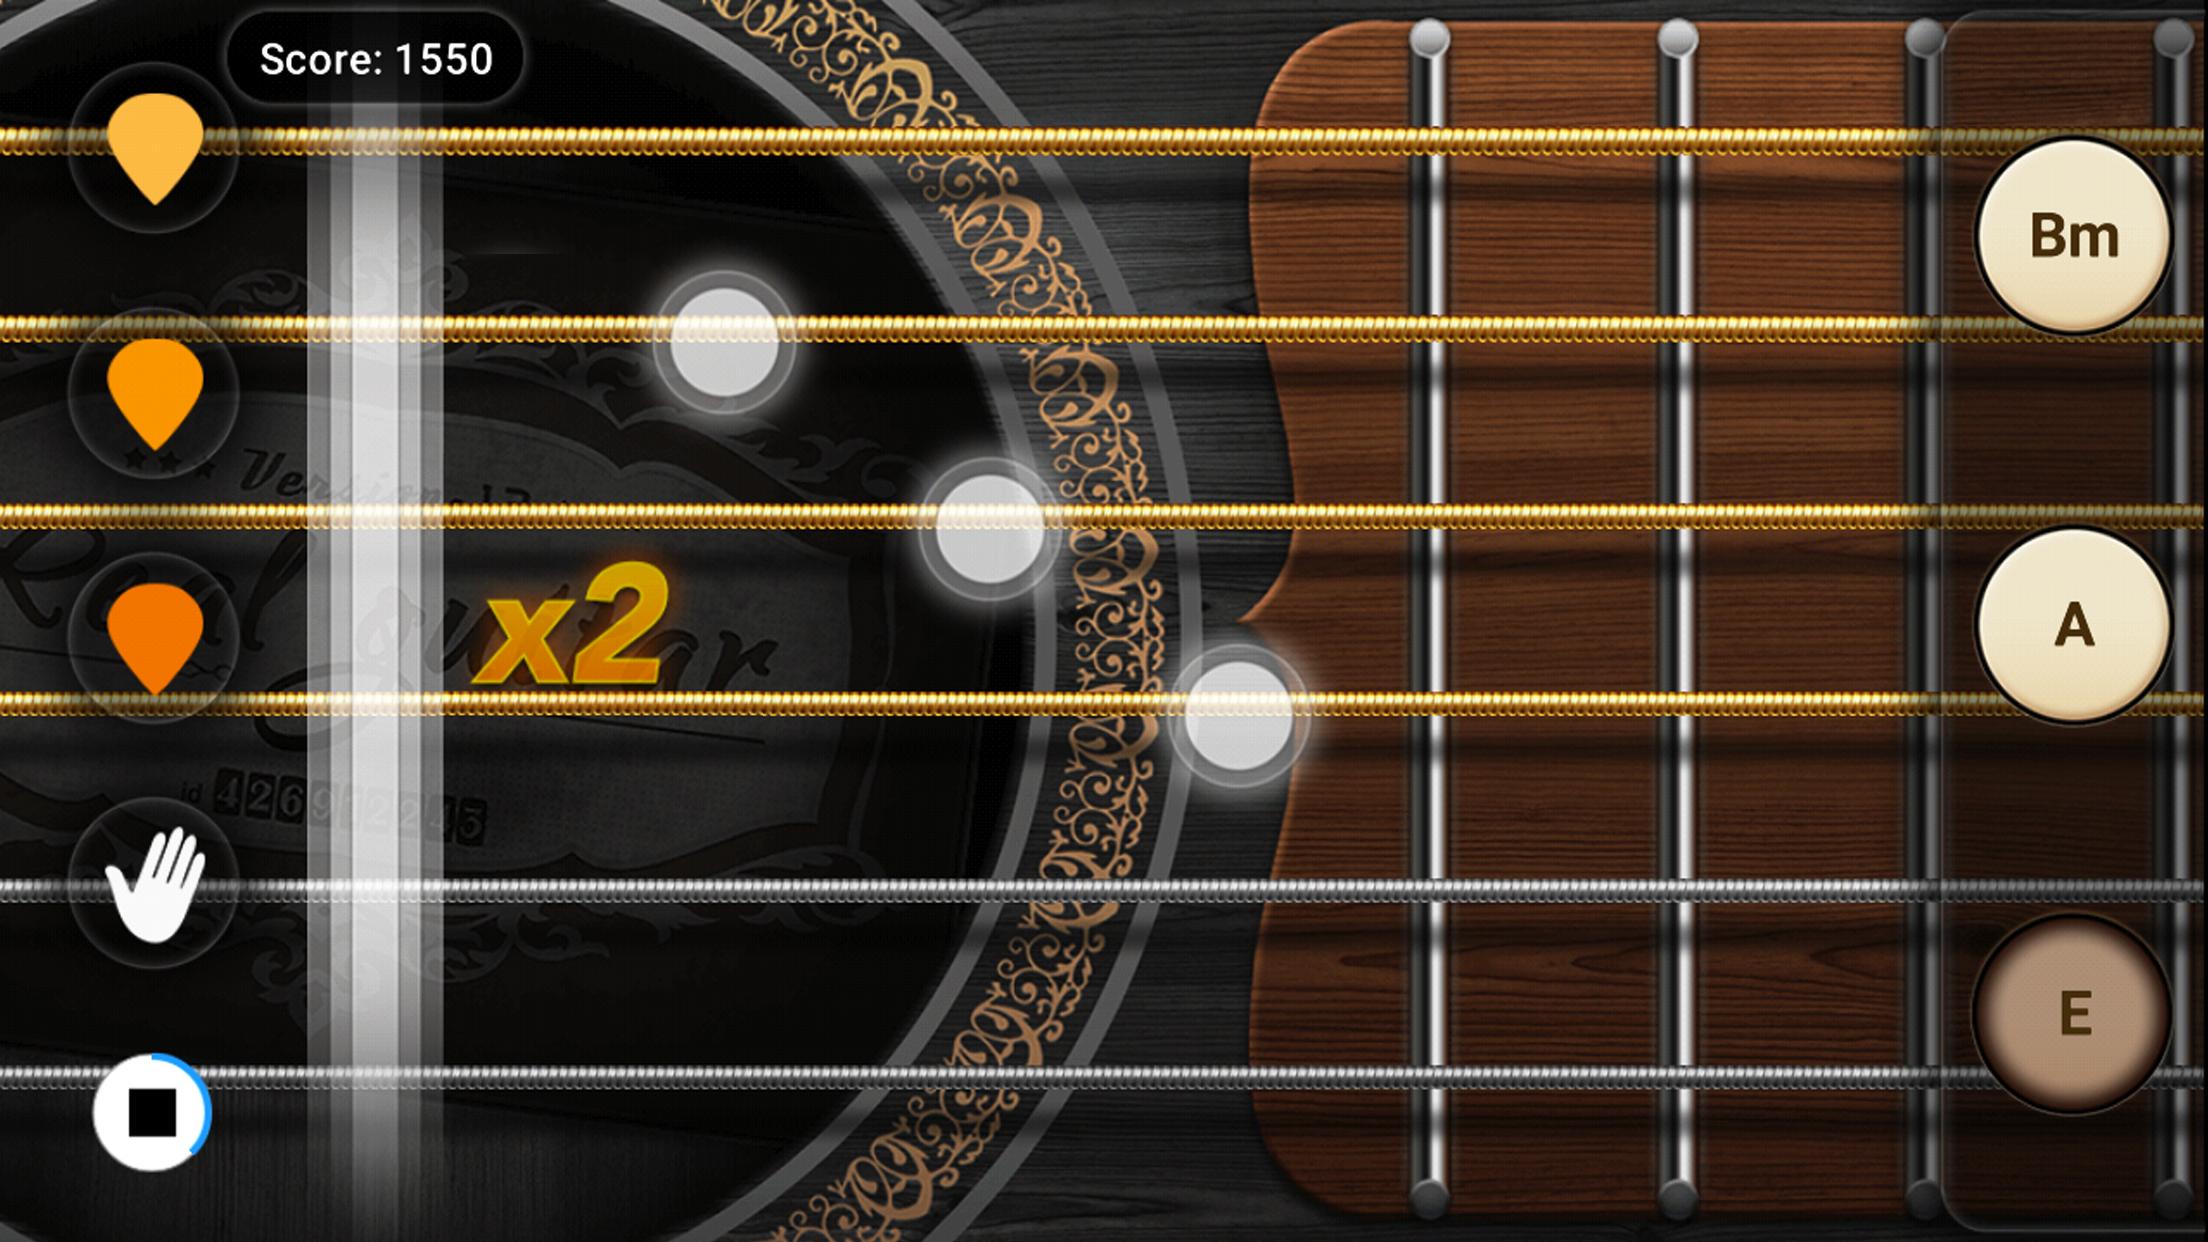 Real Guitar Free - Chords, Tabs & Simulator Games 3.31.0 Screenshot 6